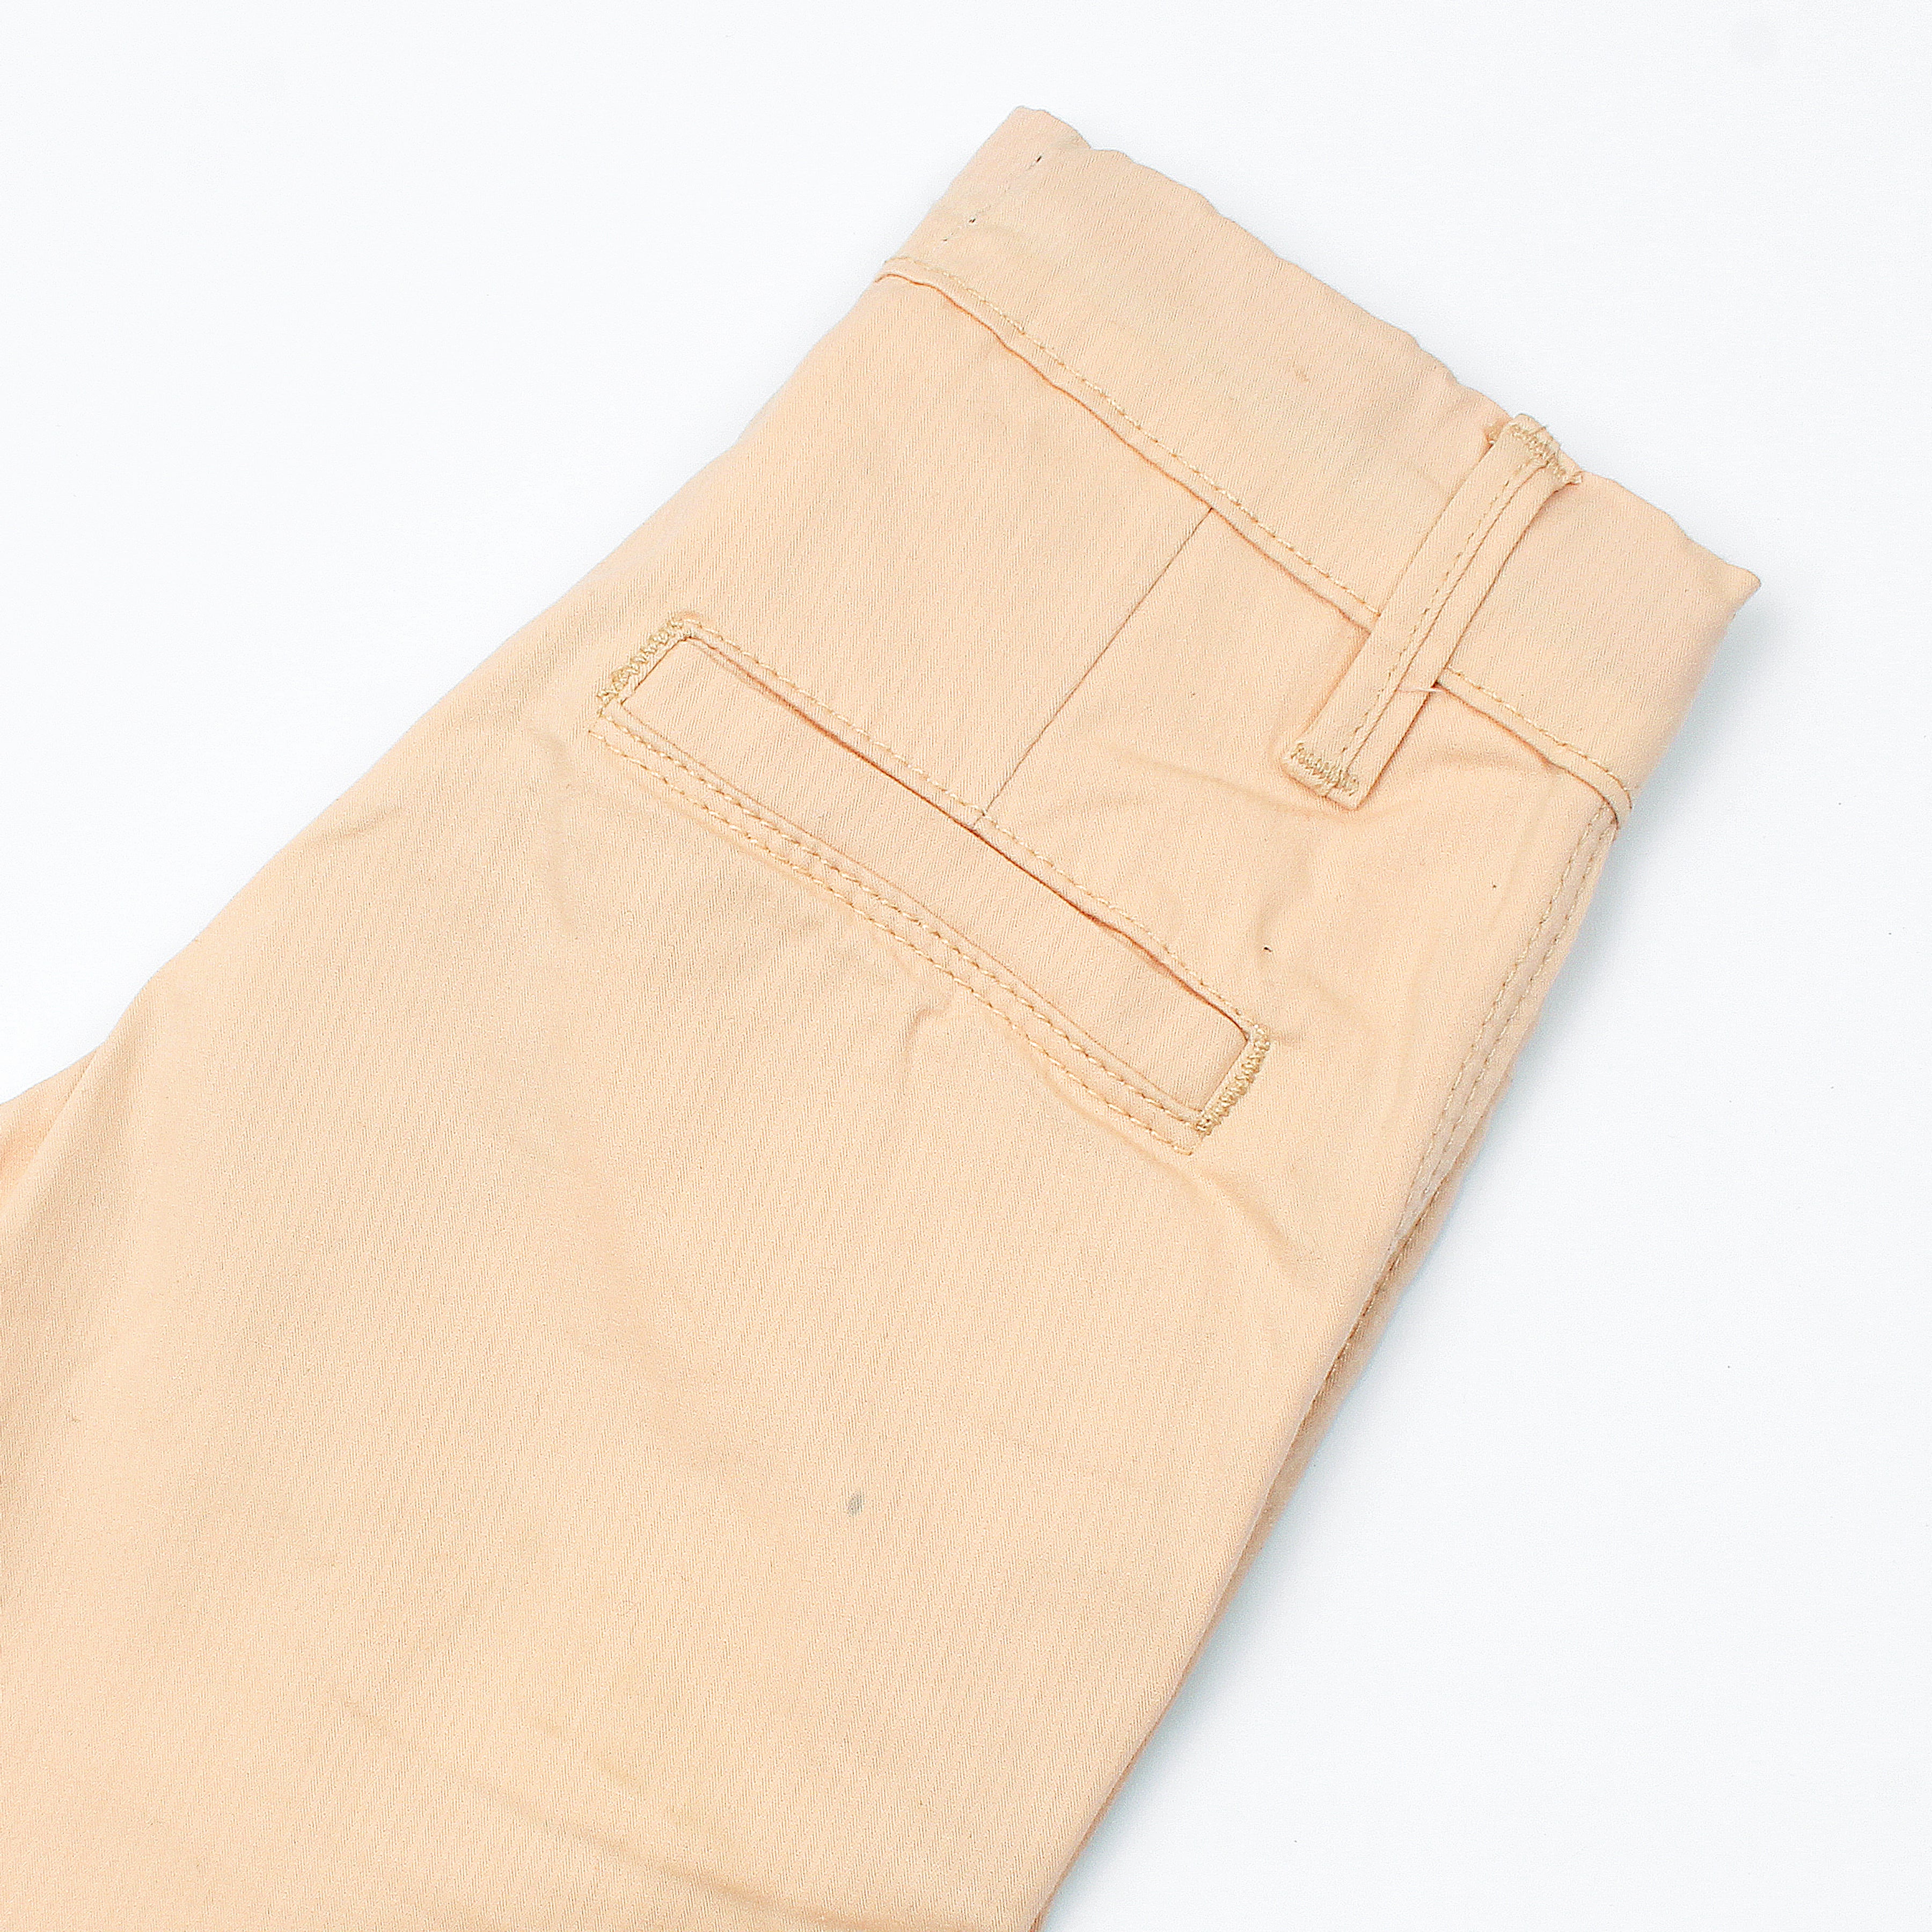 Rawculture Plain Jeans Short-KSHR-2086